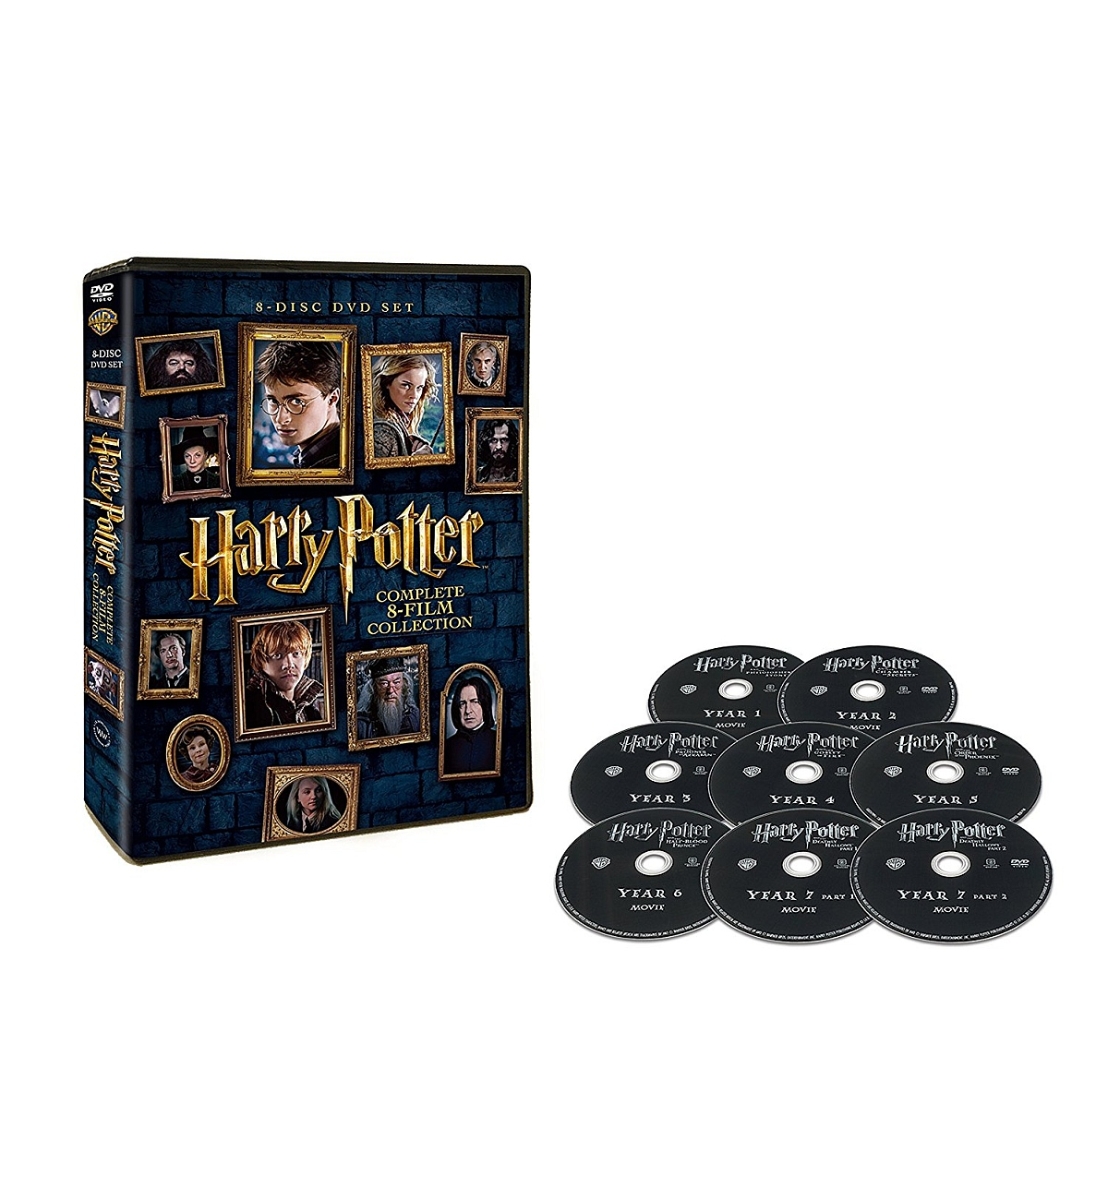 楽天ブックス: ハリー・ポッター 8-Film DVDセット - クリス 